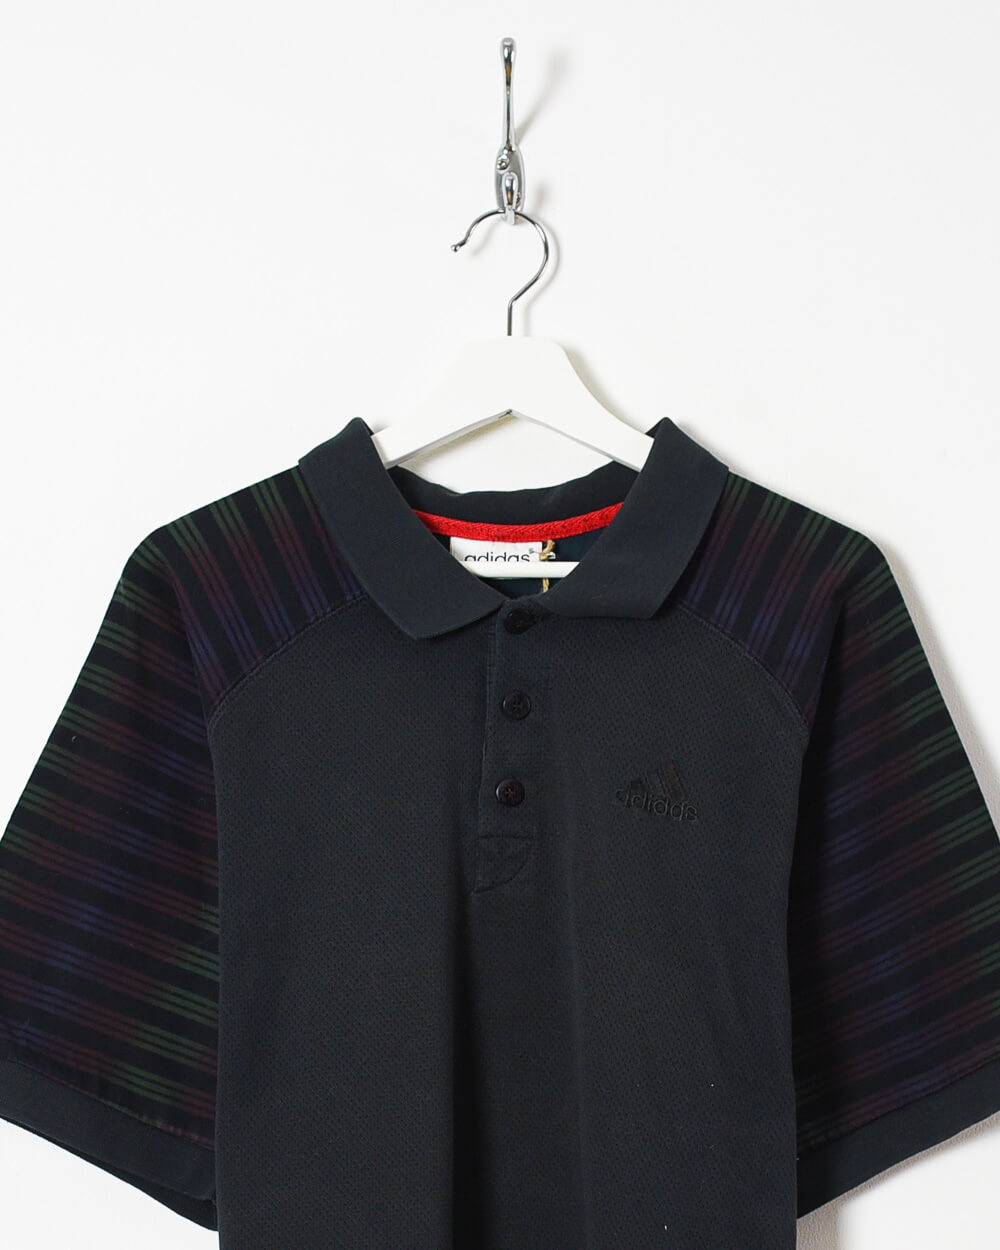 Black Adidas Polo Shirt - Medium